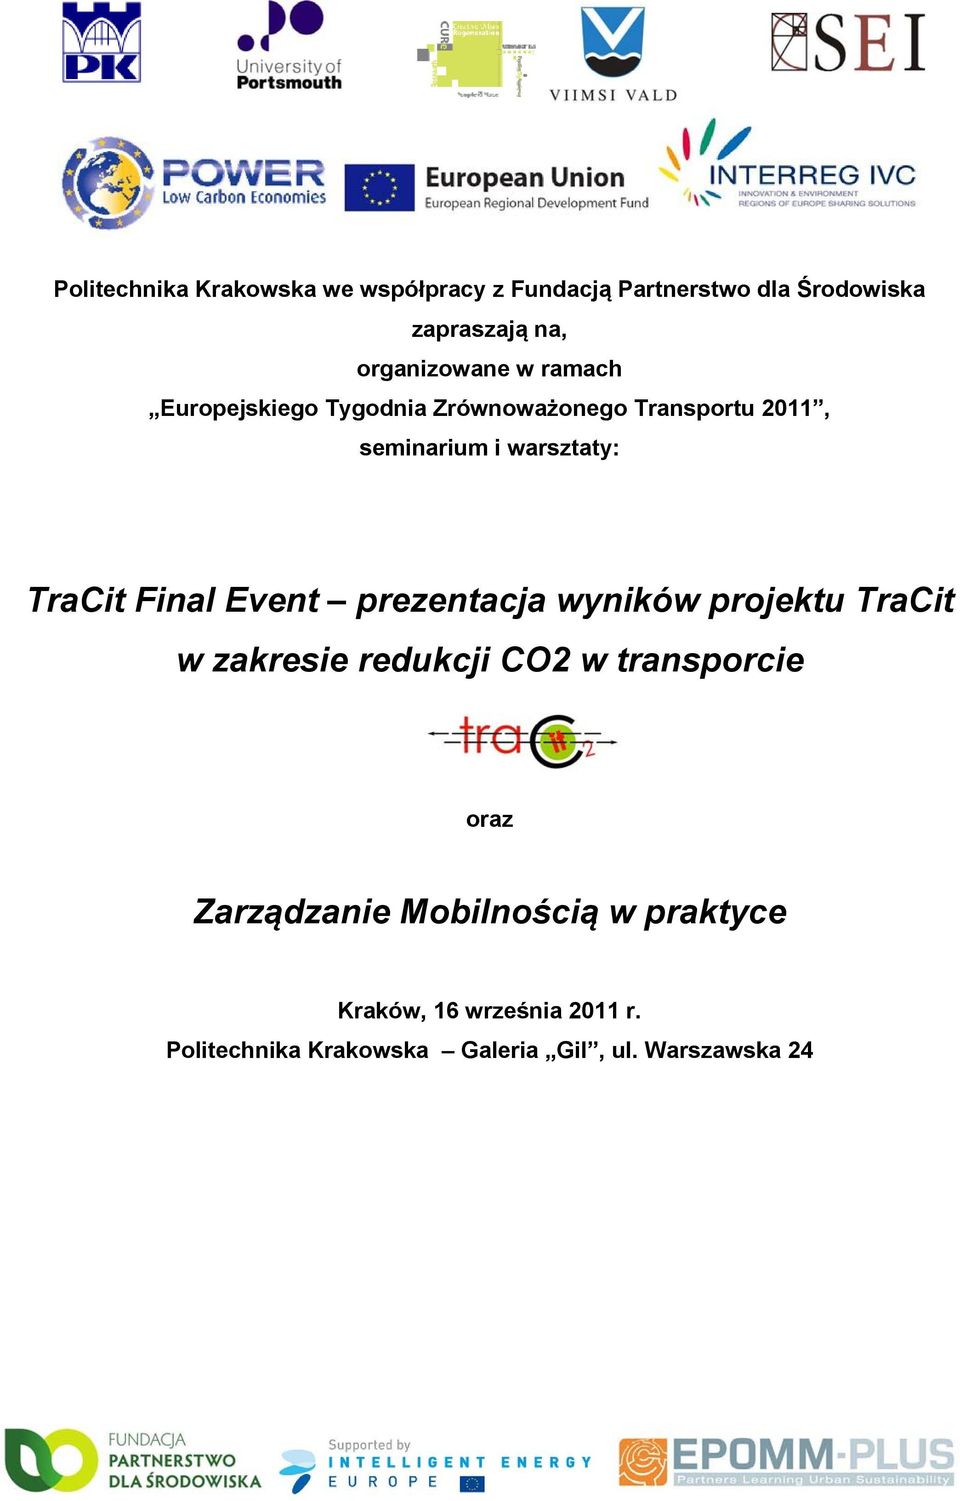 TraCit Final Event prezentacja wyników projektu TraCit w zakresie redukcji CO2 w transporcie oraz